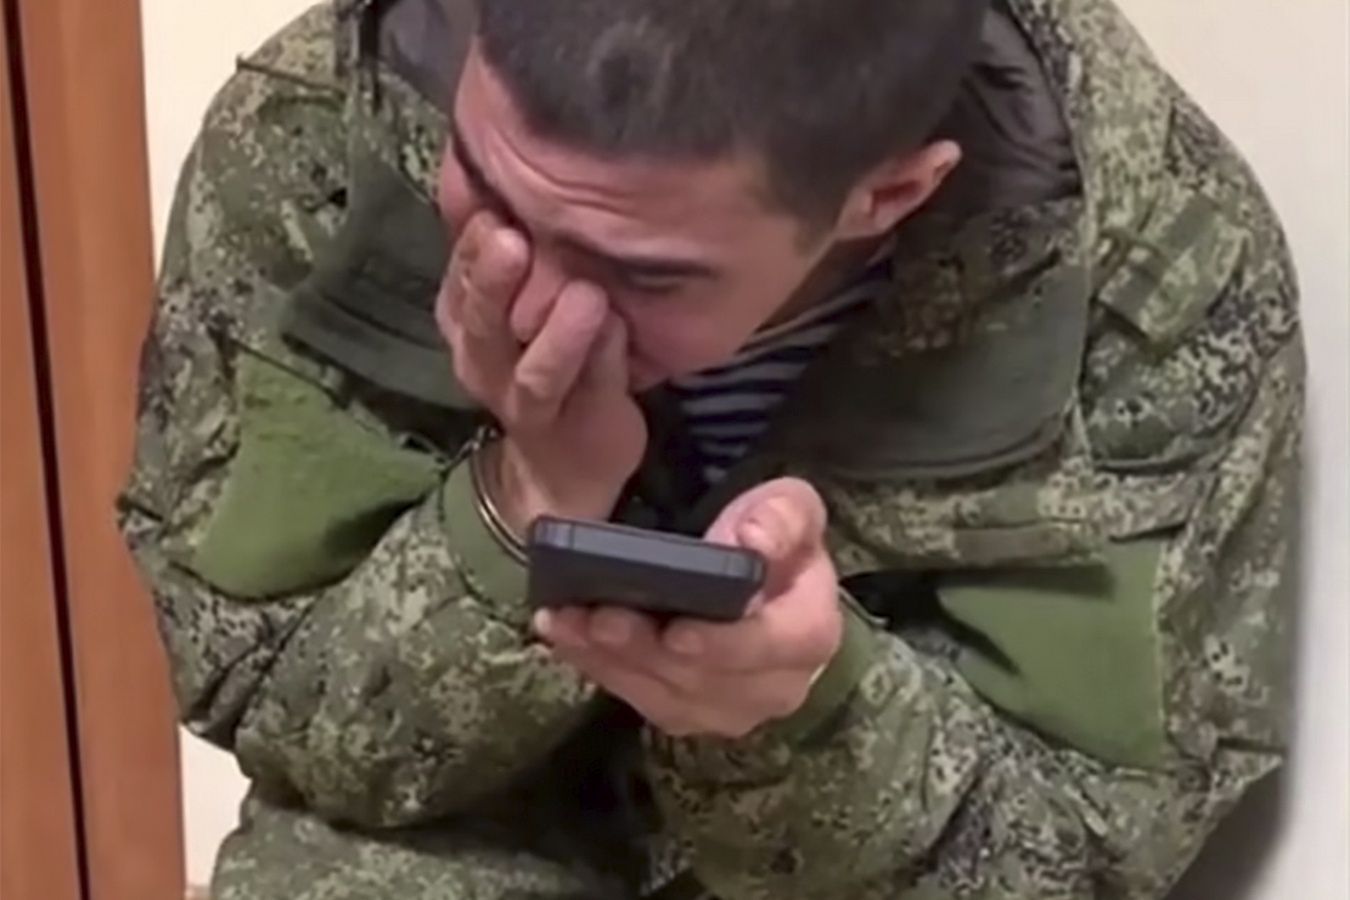 "Liczy się tylko wymordowanie". Rosyjski żołnierz płakał do słuchawki